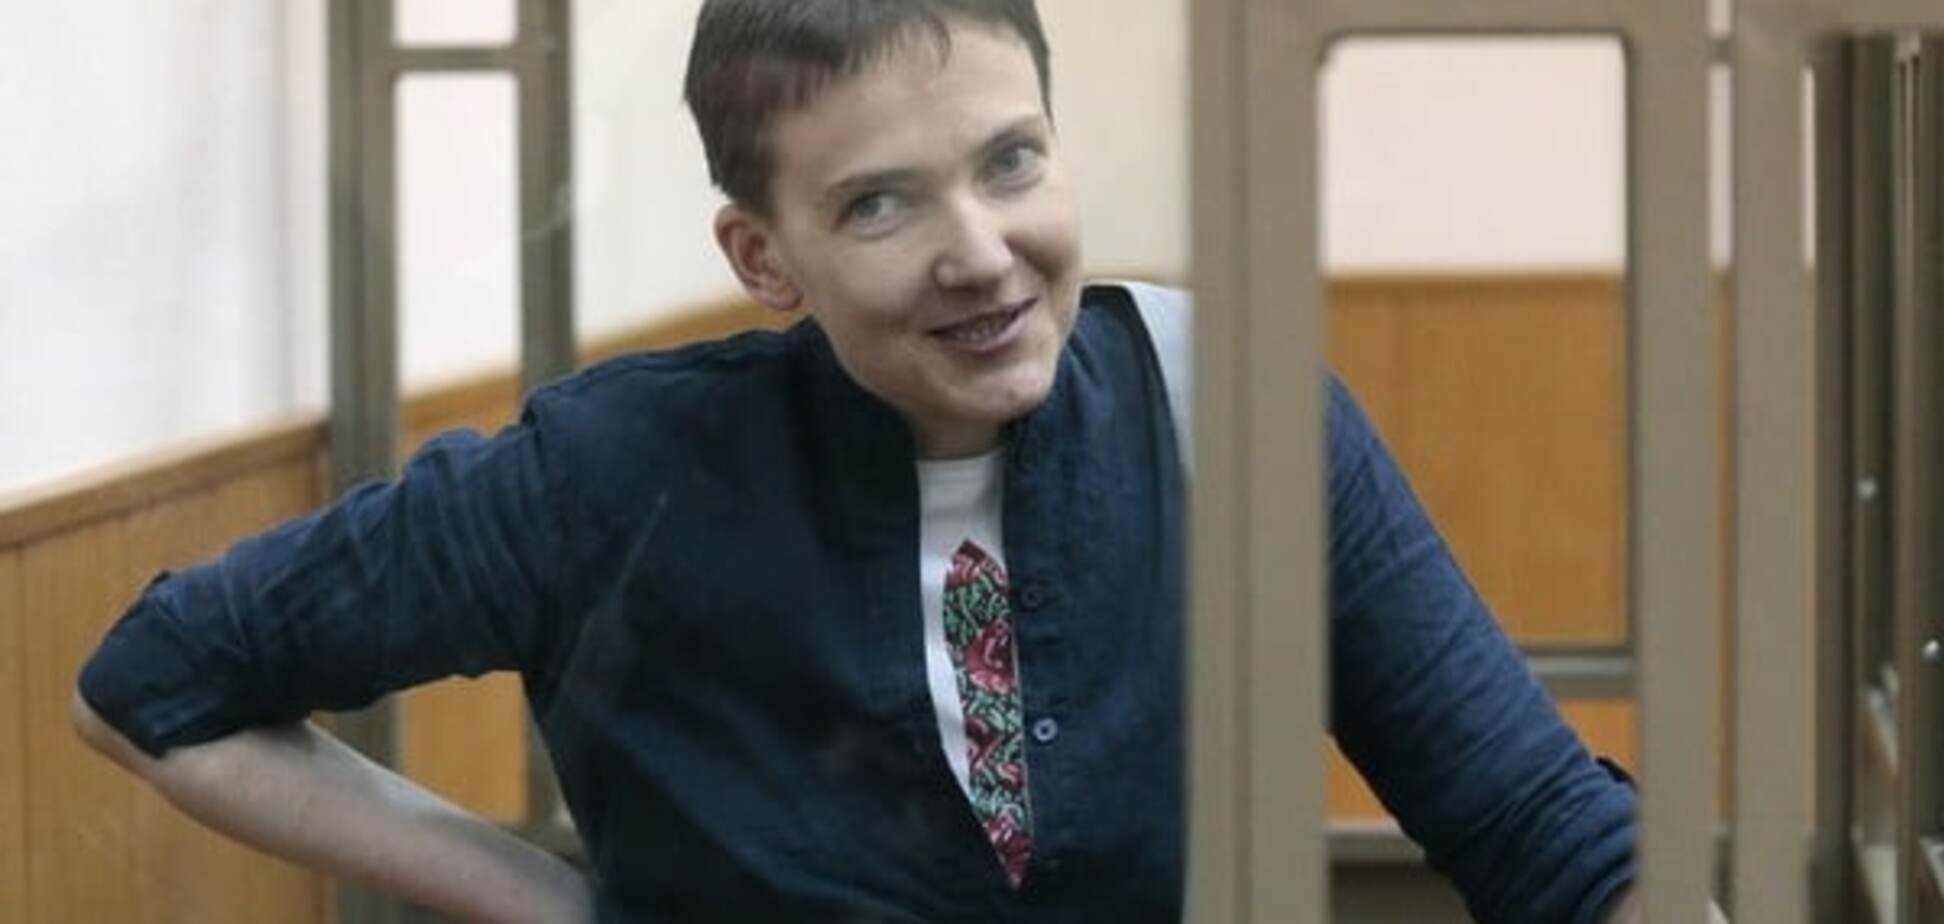 Помилування неможливе: Панфілов назвав прийнятний варіант звільнення Савченко 